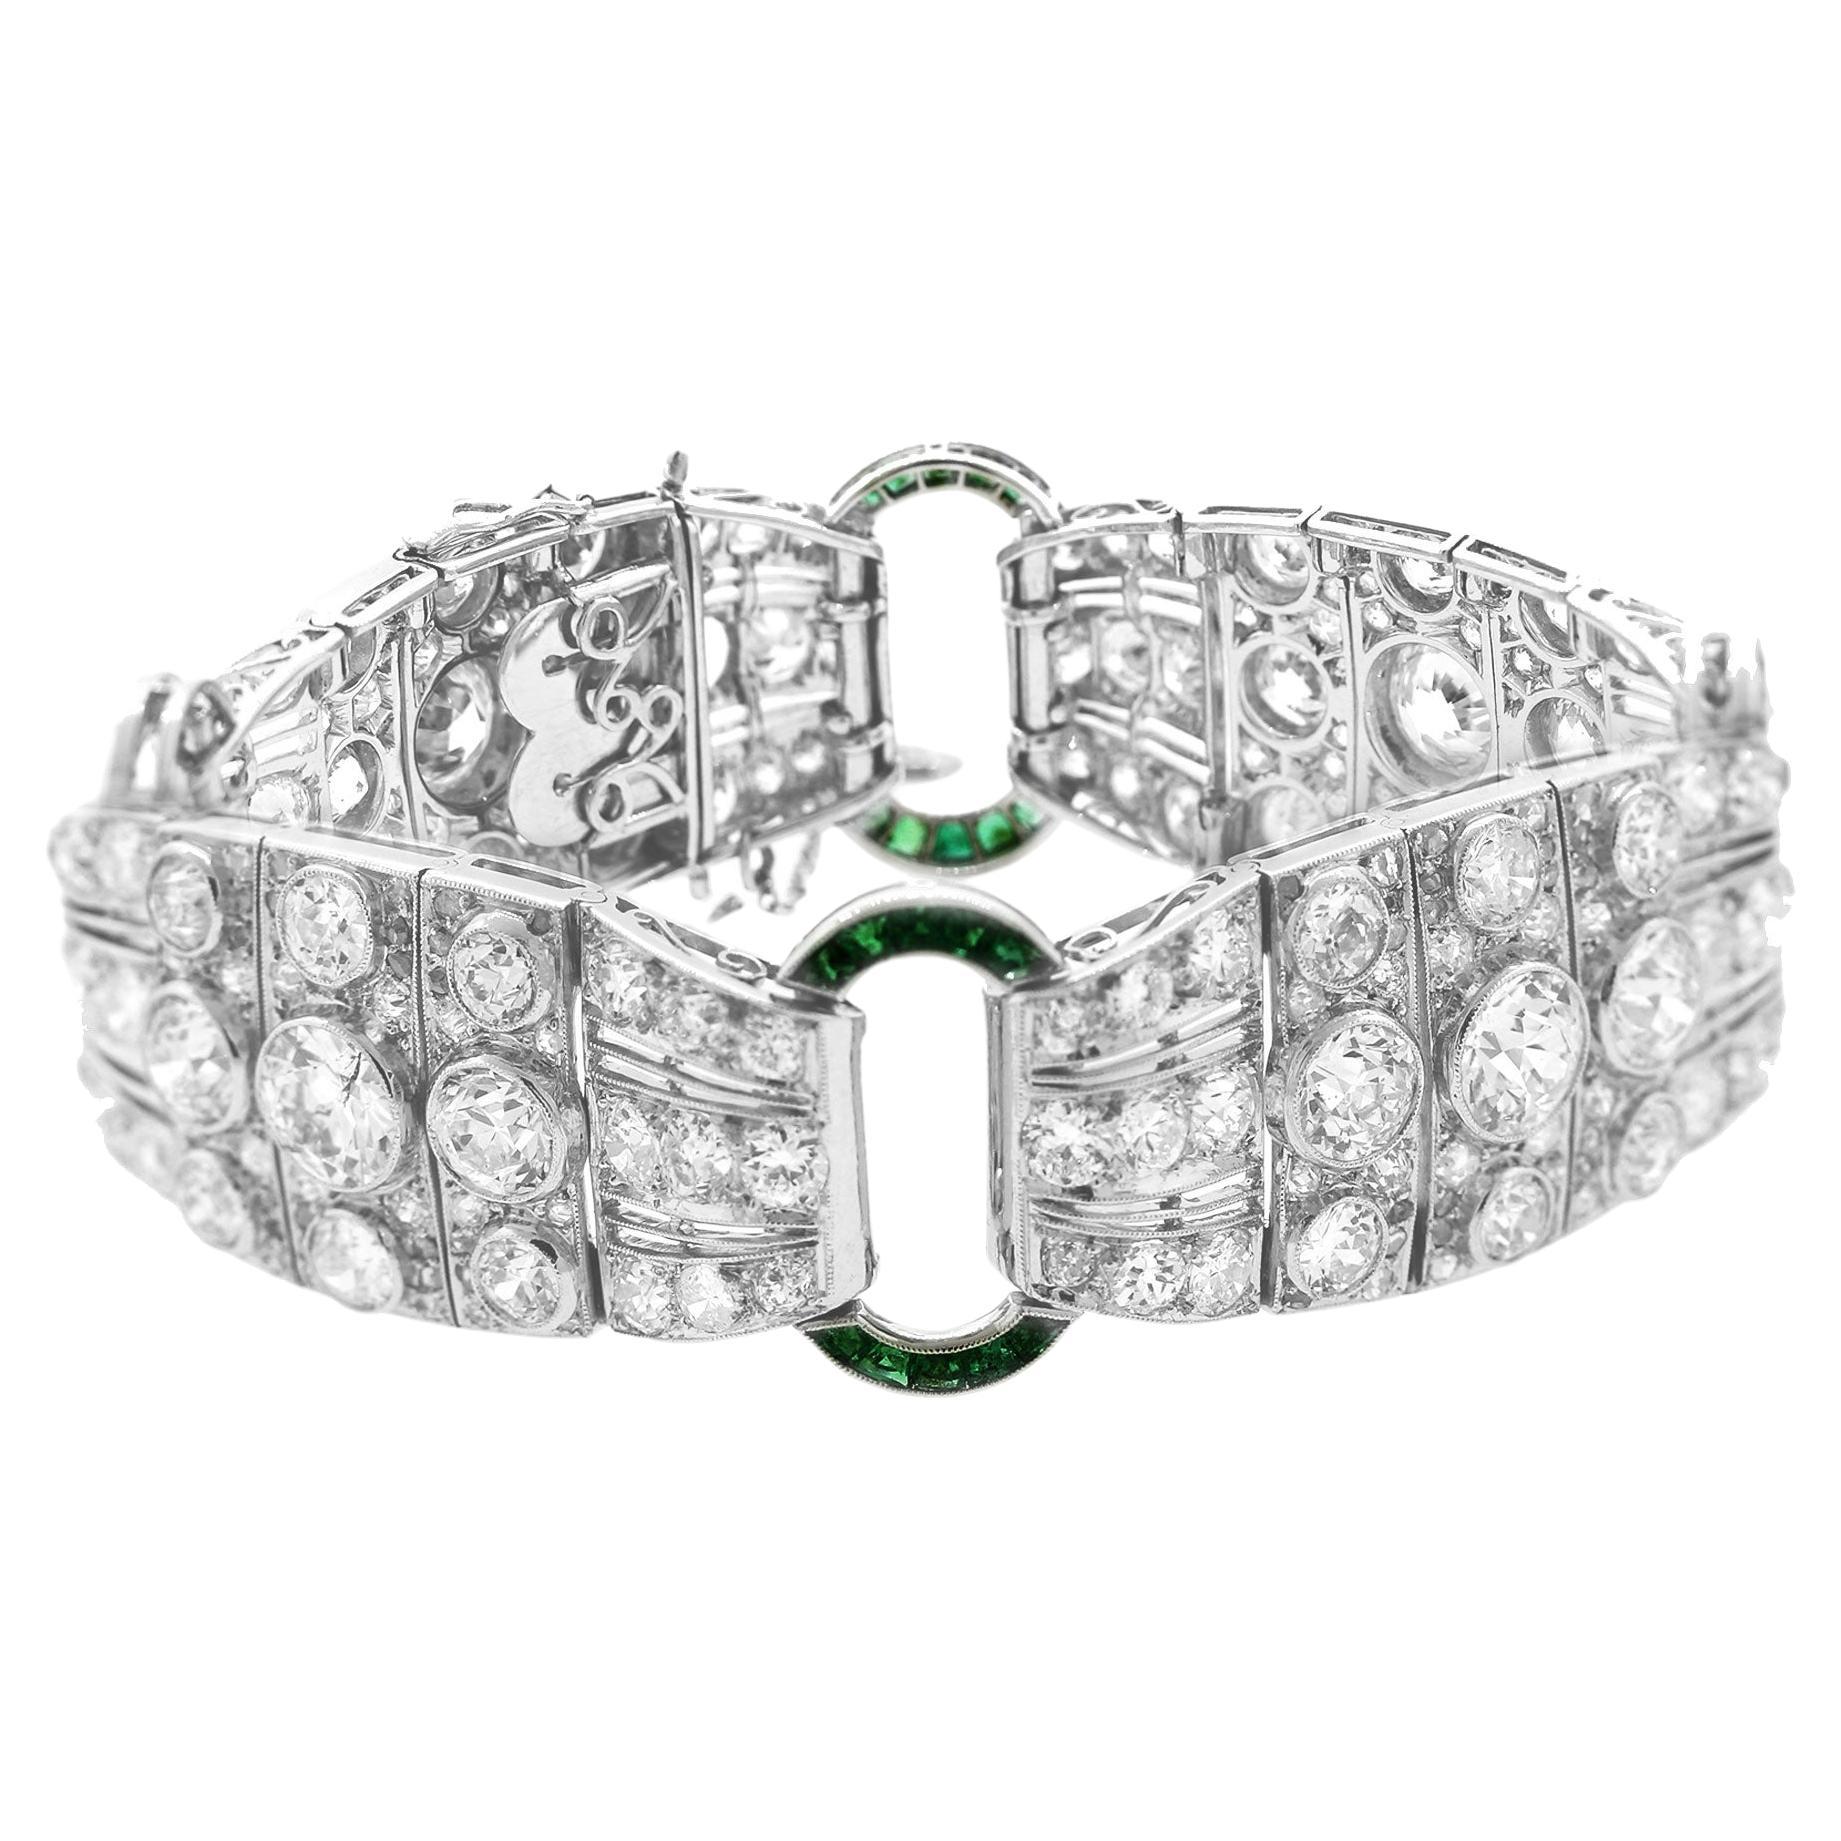 Magnificent French Art Deco Diamond Emerald Platinum Bracelet For Sale